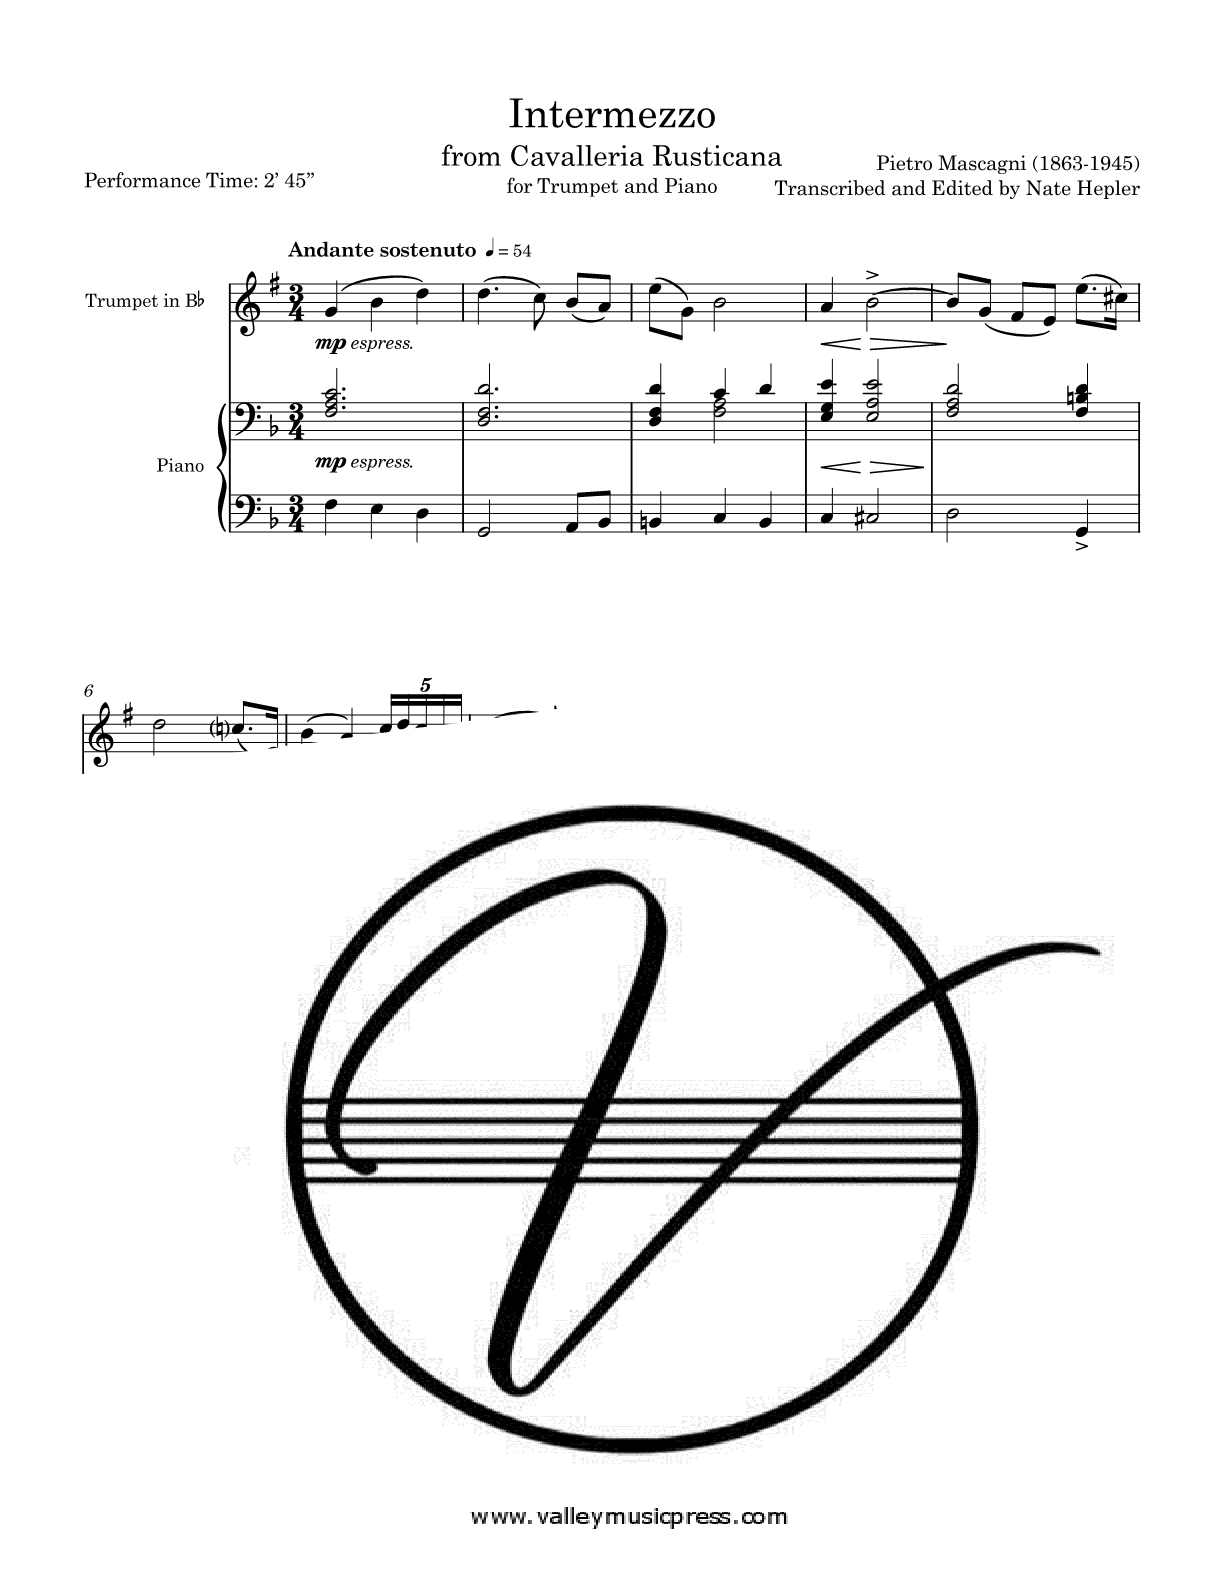 Mascagni - Intermezzo from Cavalleria Rusticana (Trp & Piano)